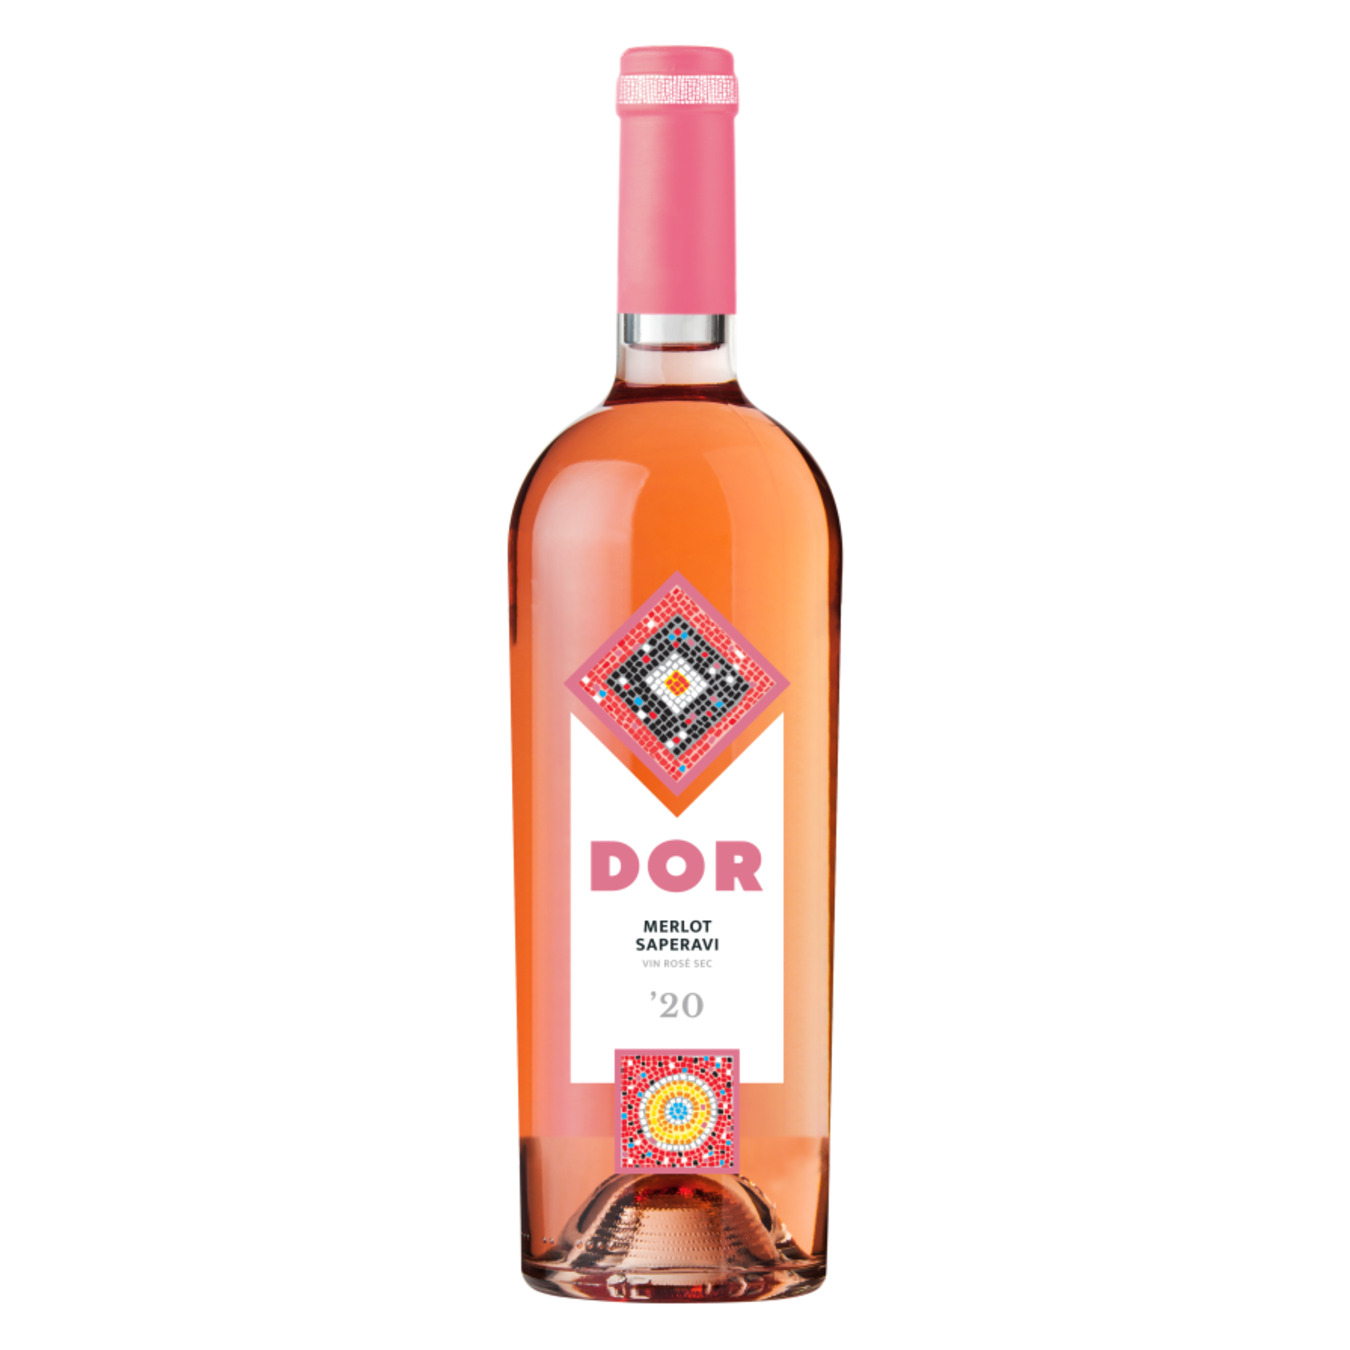 Bostavan DOR Merlot-Saperavi pink dry wine 13% 0.75 l